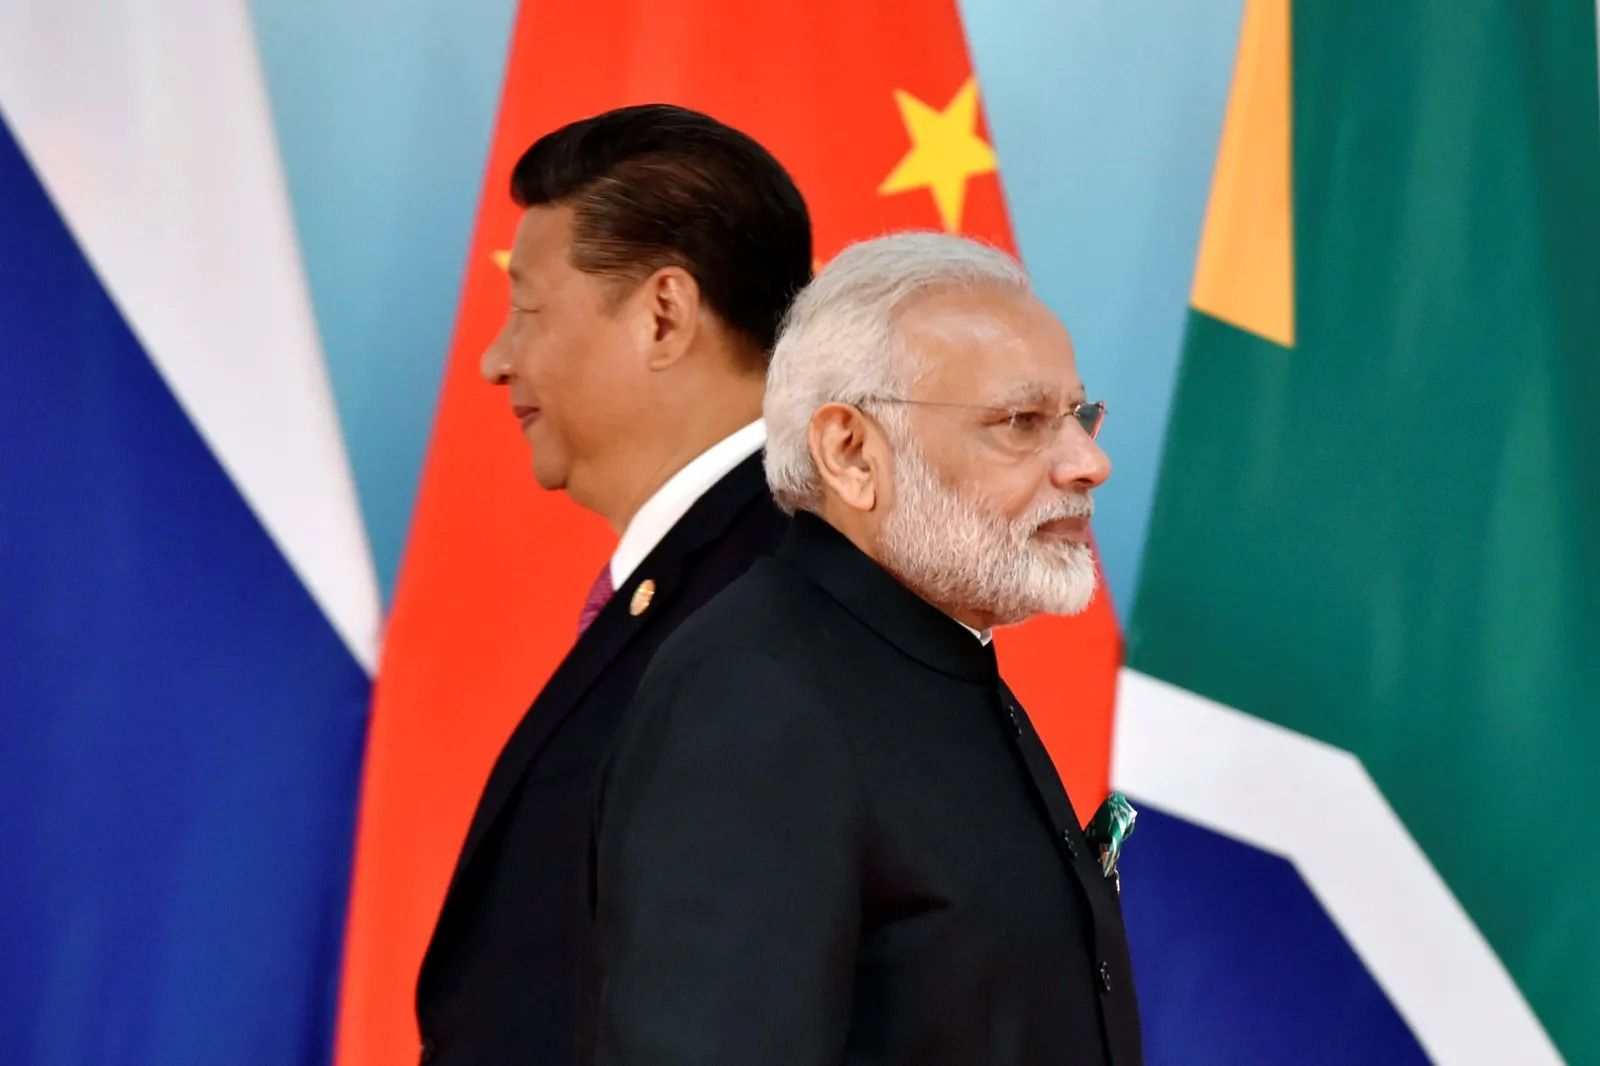 خداحافظ قرن آمریکا /چین و هند 2 بازیگر اصلی در نظم جهانی آینده؟